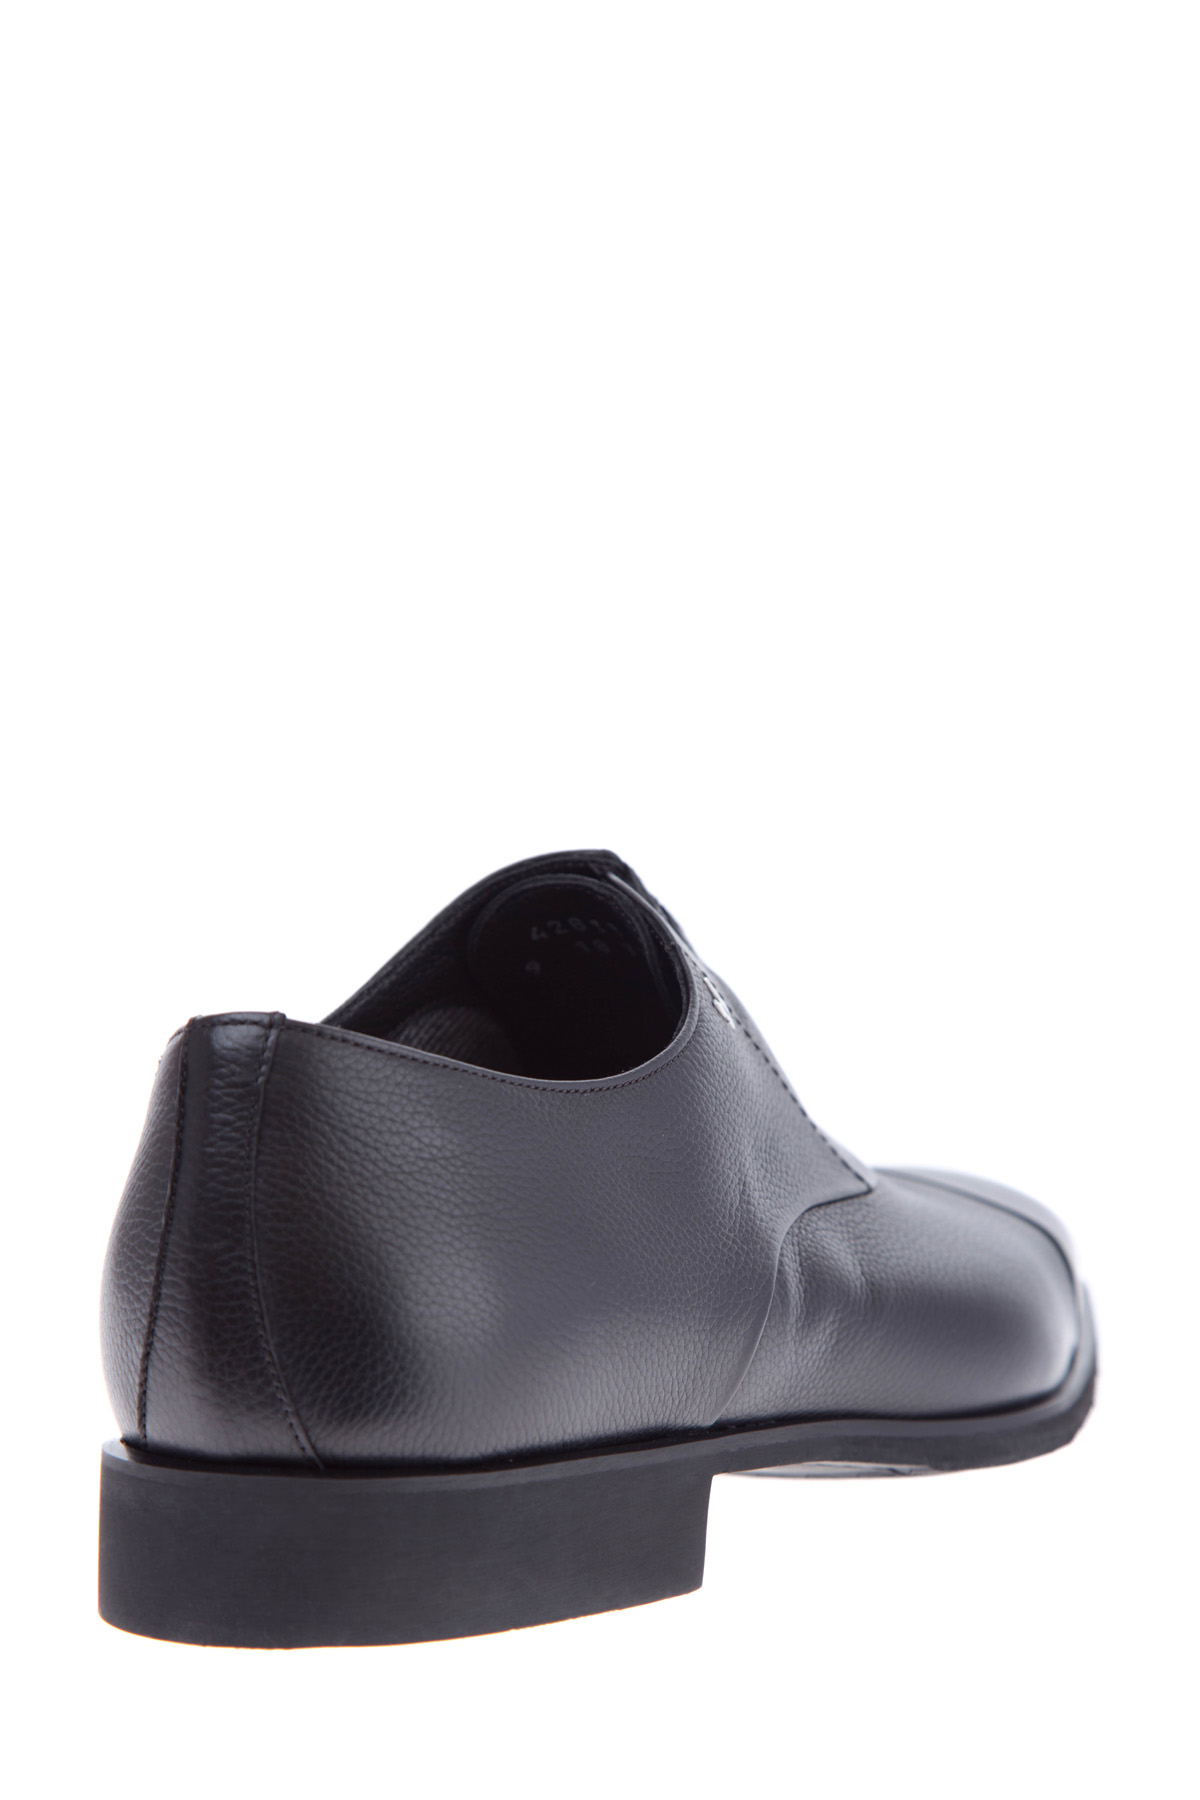 Классические туфли-оксфорды с литым логотипом бренда MORESCHI, цвет черный, размер 43.5 - фото 4